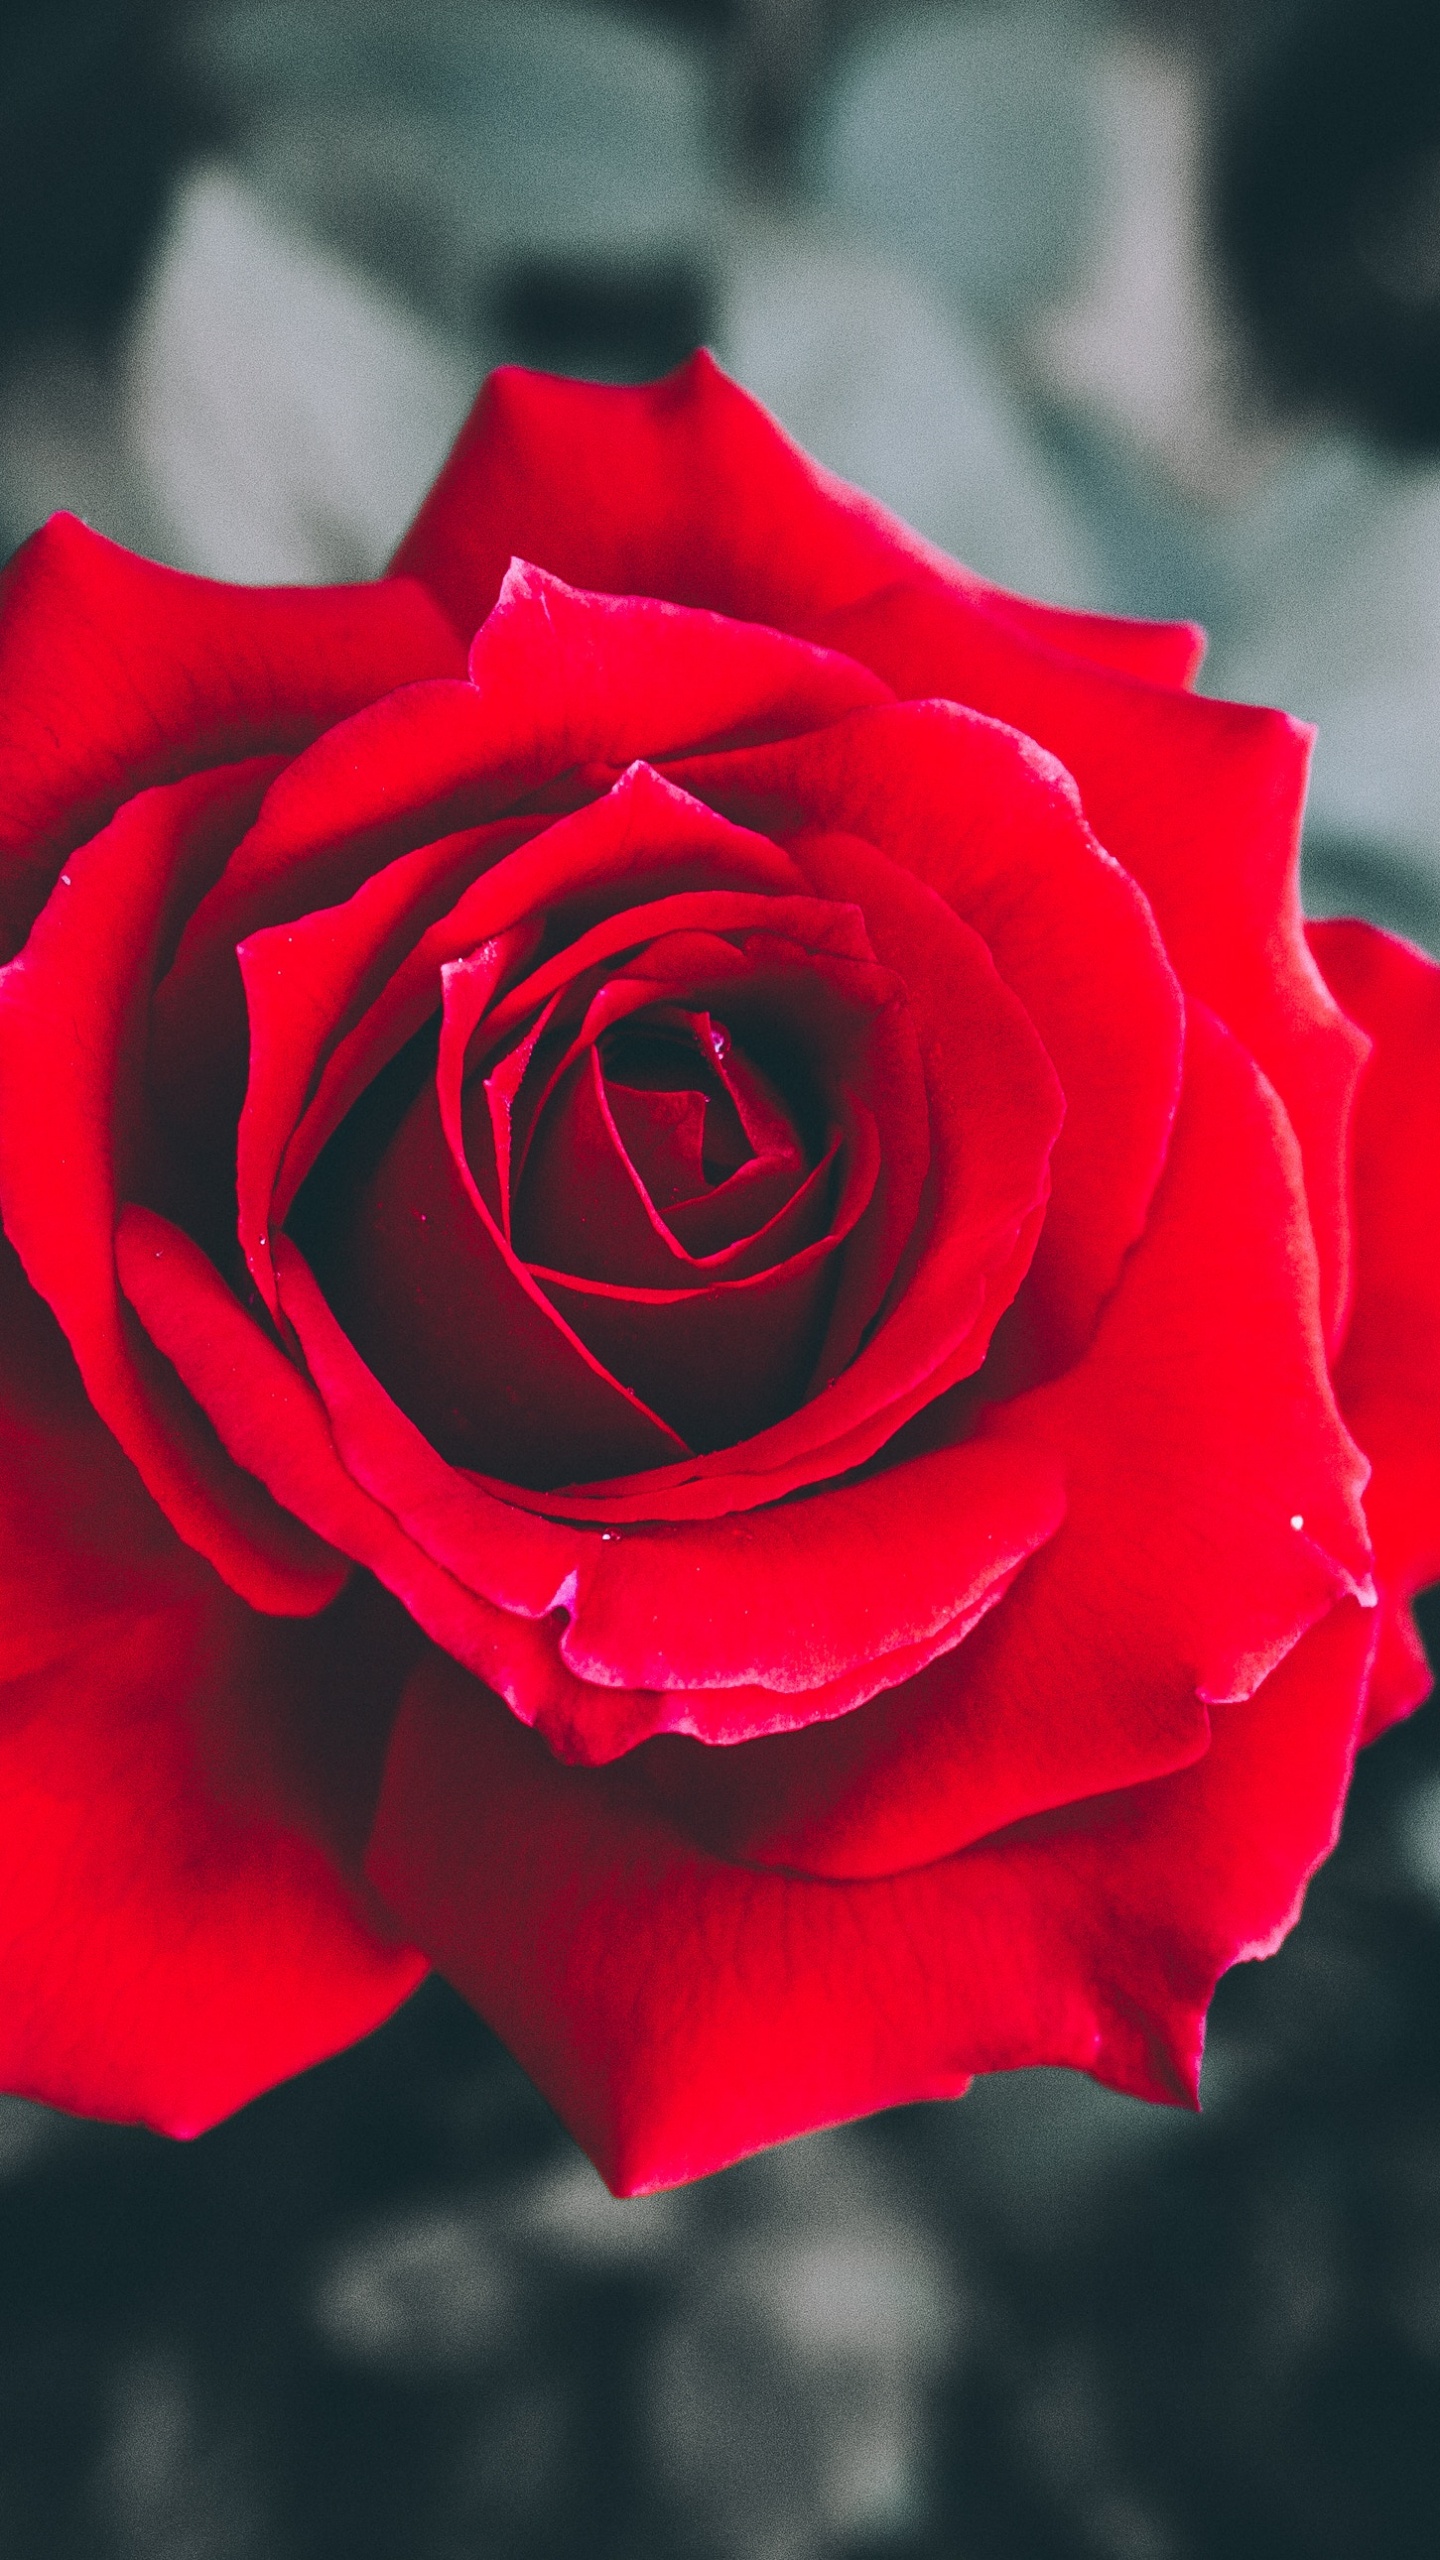 Rosa Roja en Flor en Fotografía de Cerca. Wallpaper in 1440x2560 Resolution